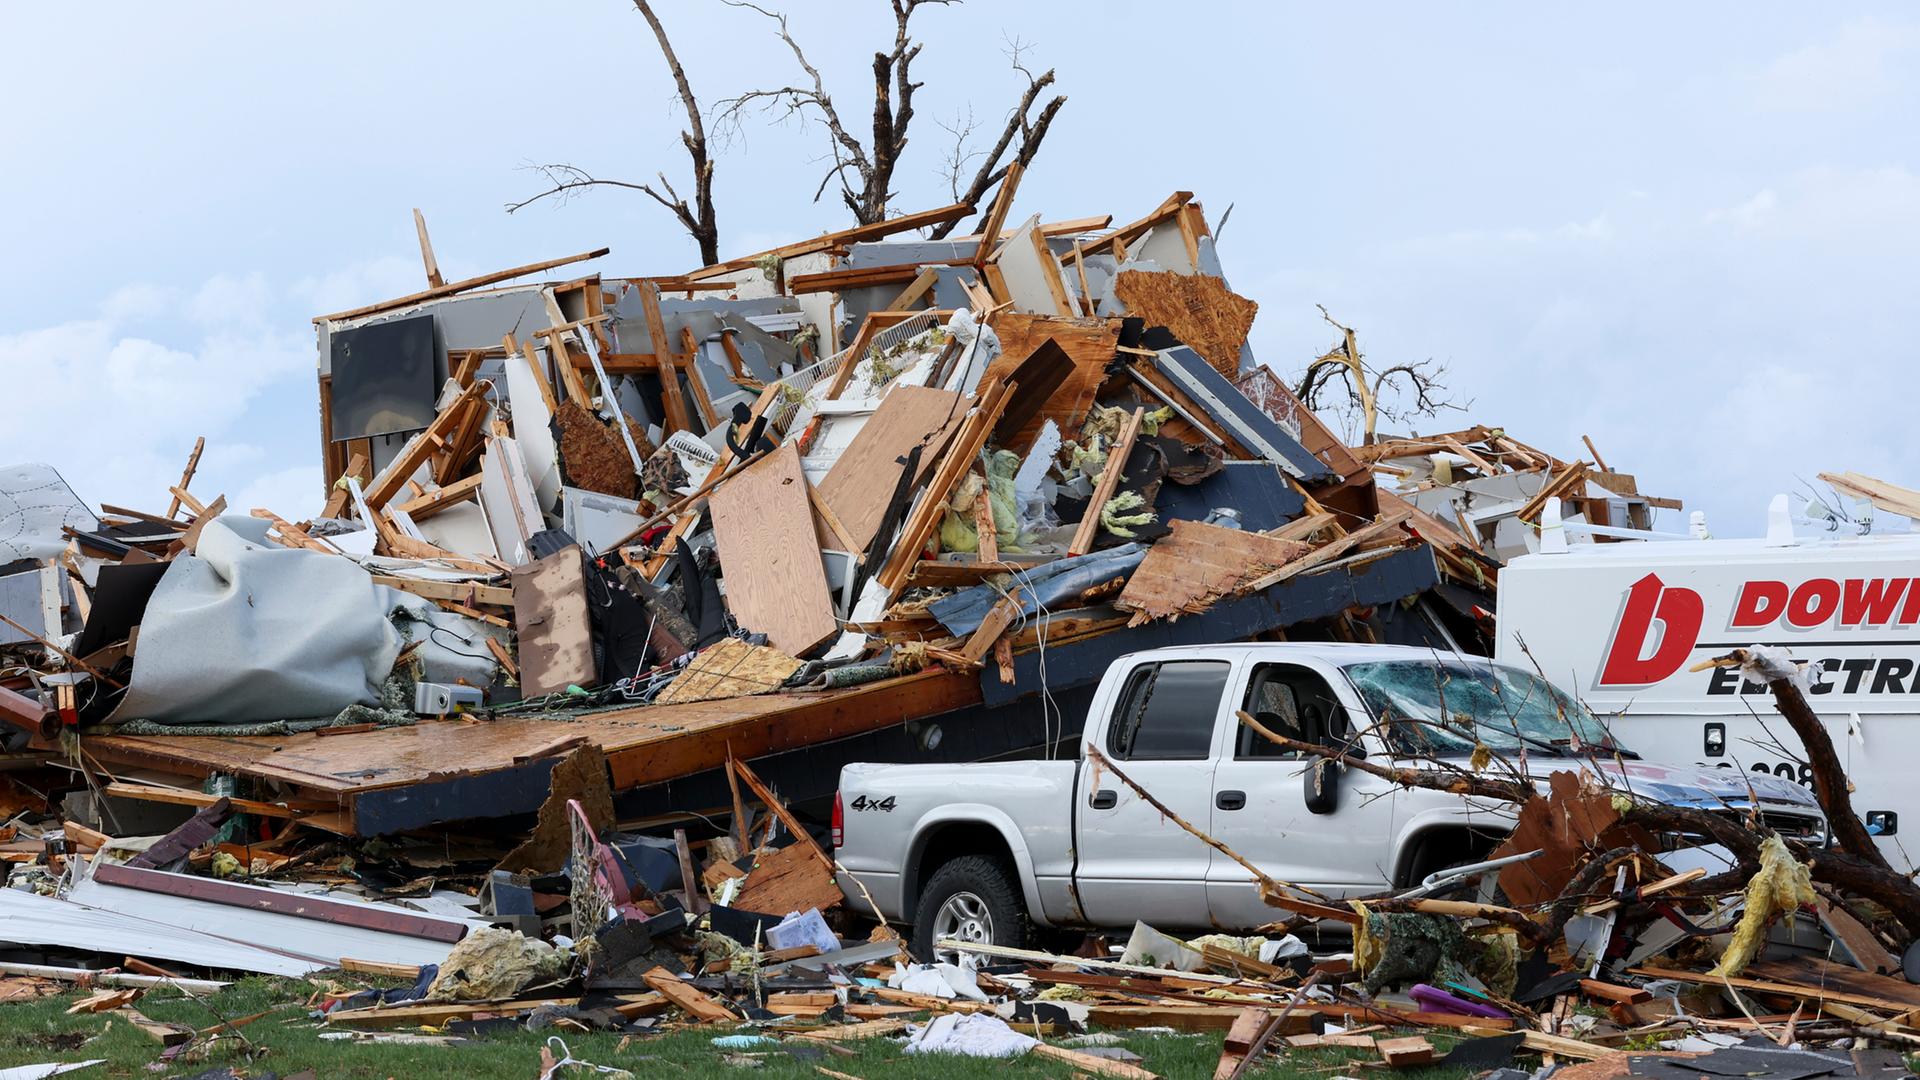 Ein Haus liegt nach einem Tornado in Trümmern. Hinter den Trümmern sieht man die kahlen Äste eines Baumes. Im Vordergrund ist ein Auto, das teilweise mit Brettern und Ästen bedeckt ist.